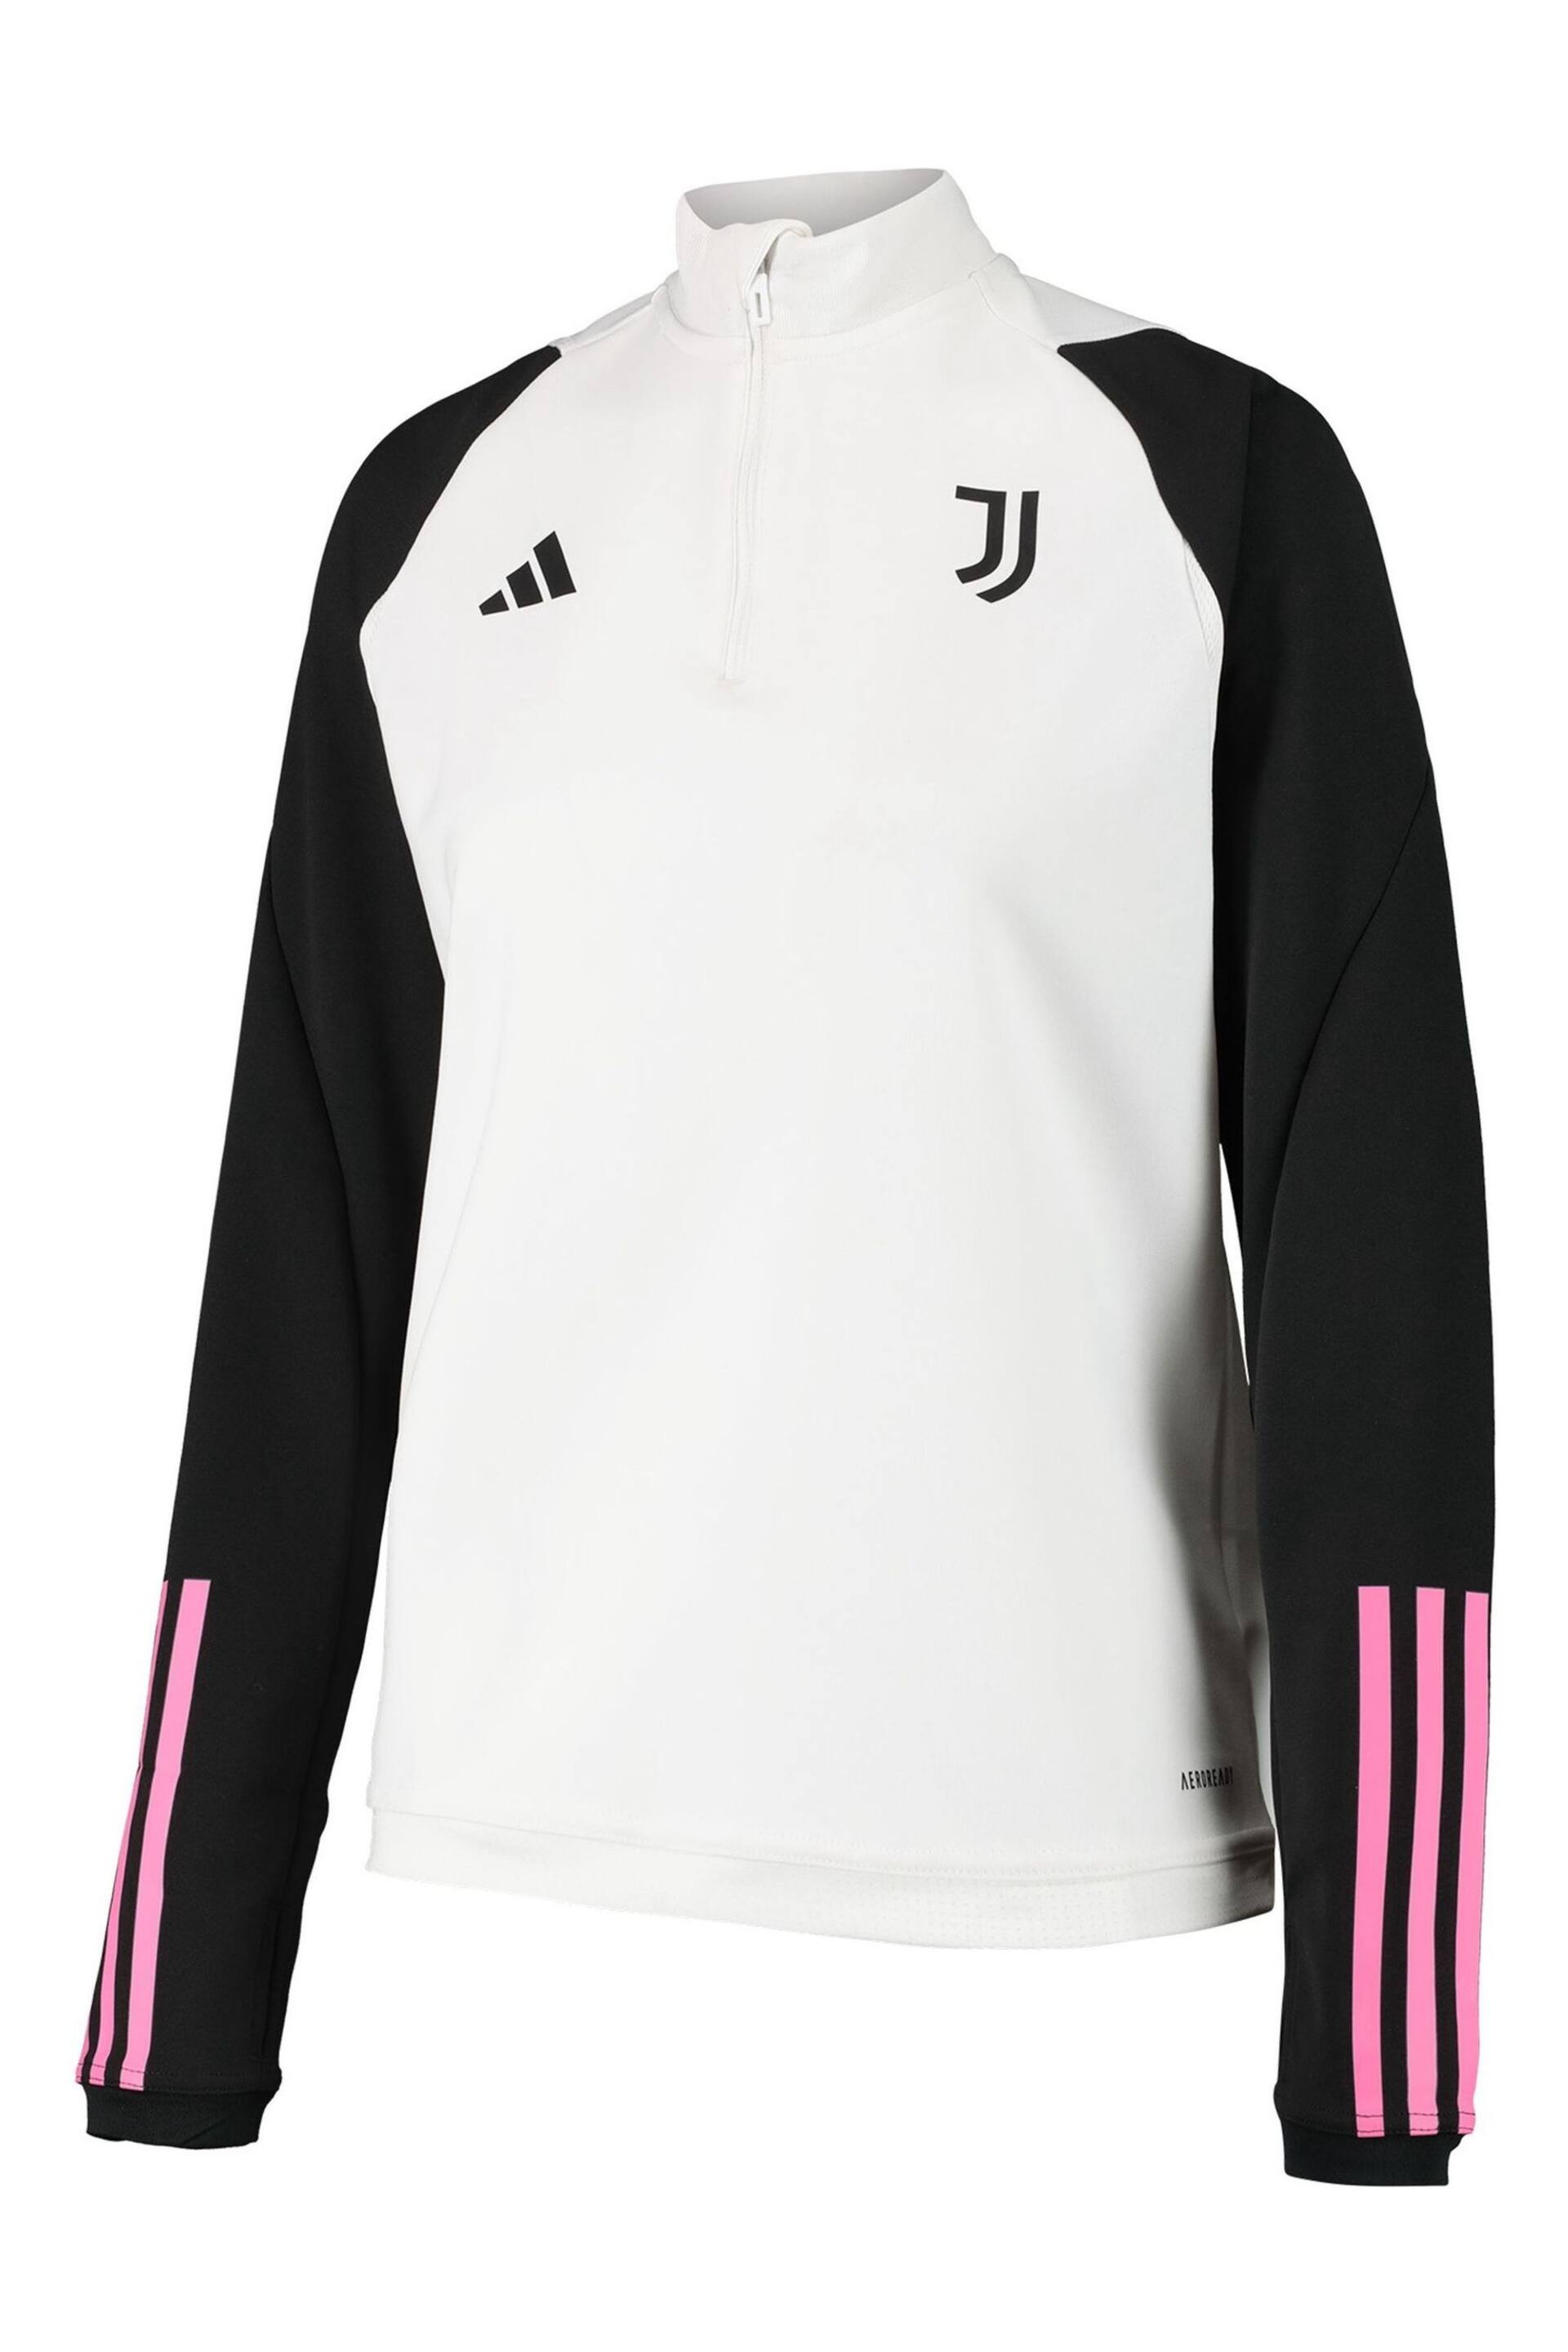 adidas White Juventus Training Top Womens - Image 2 of 3